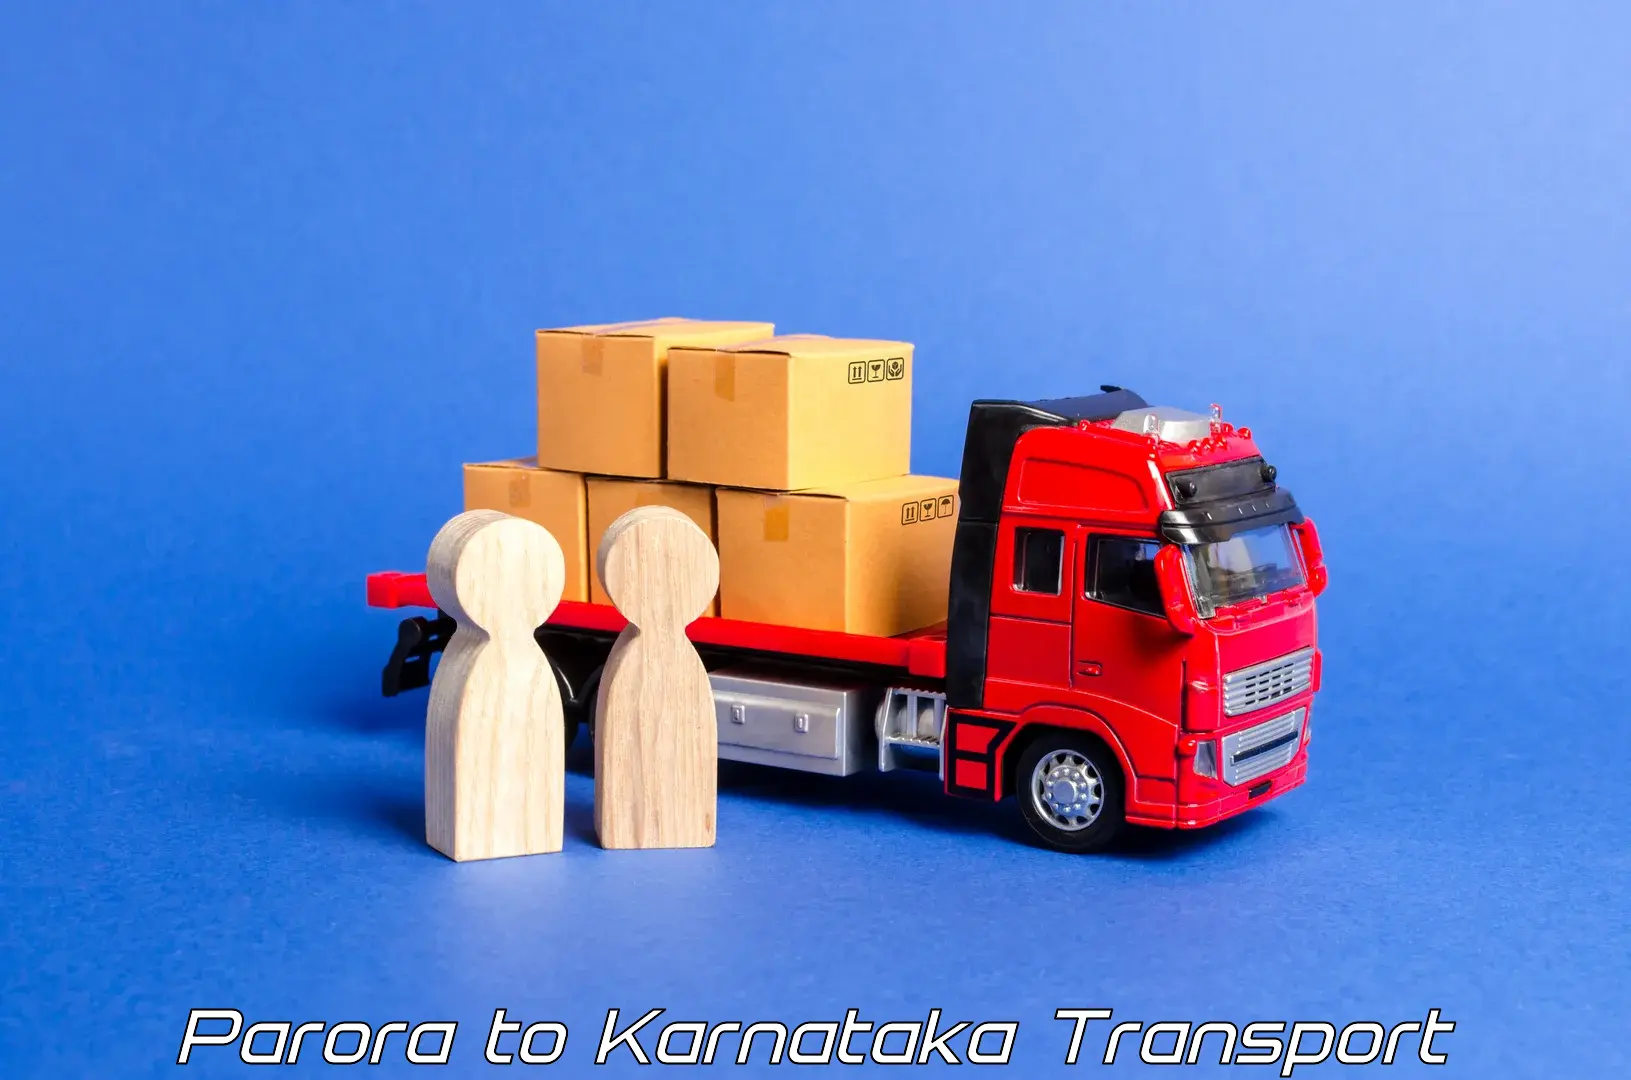 Interstate goods transport Parora to Bagalkot